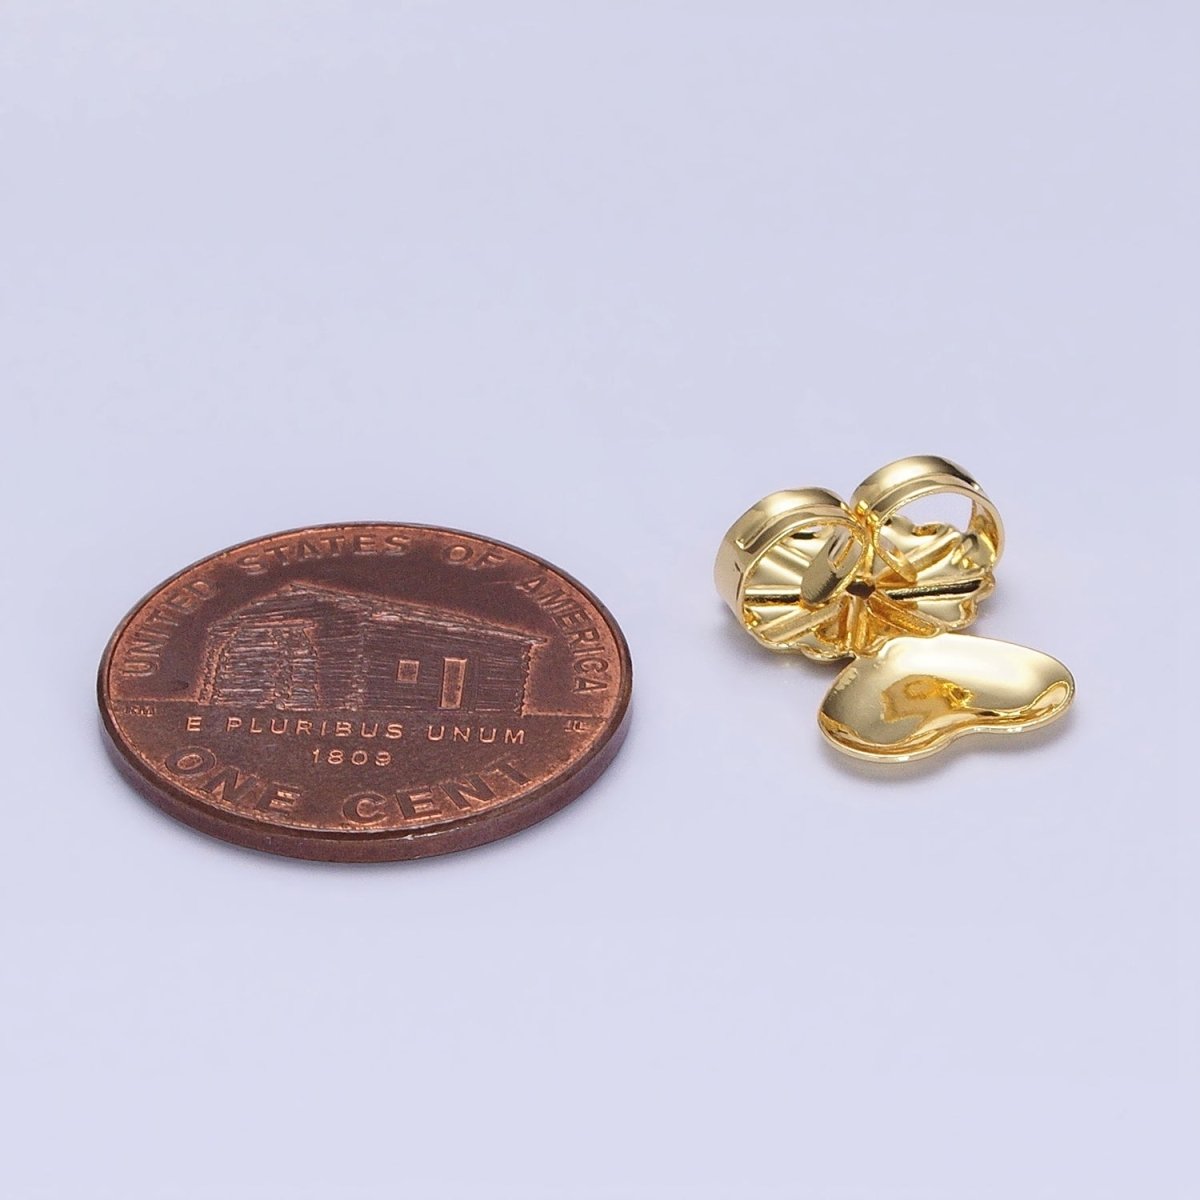 16K Gold Filled Heart Flower Earrings Back Lifter Stabilizer Supply Magic Earring Back Lifter in Gold & Silver | Z-338 Z-339 - DLUXCA